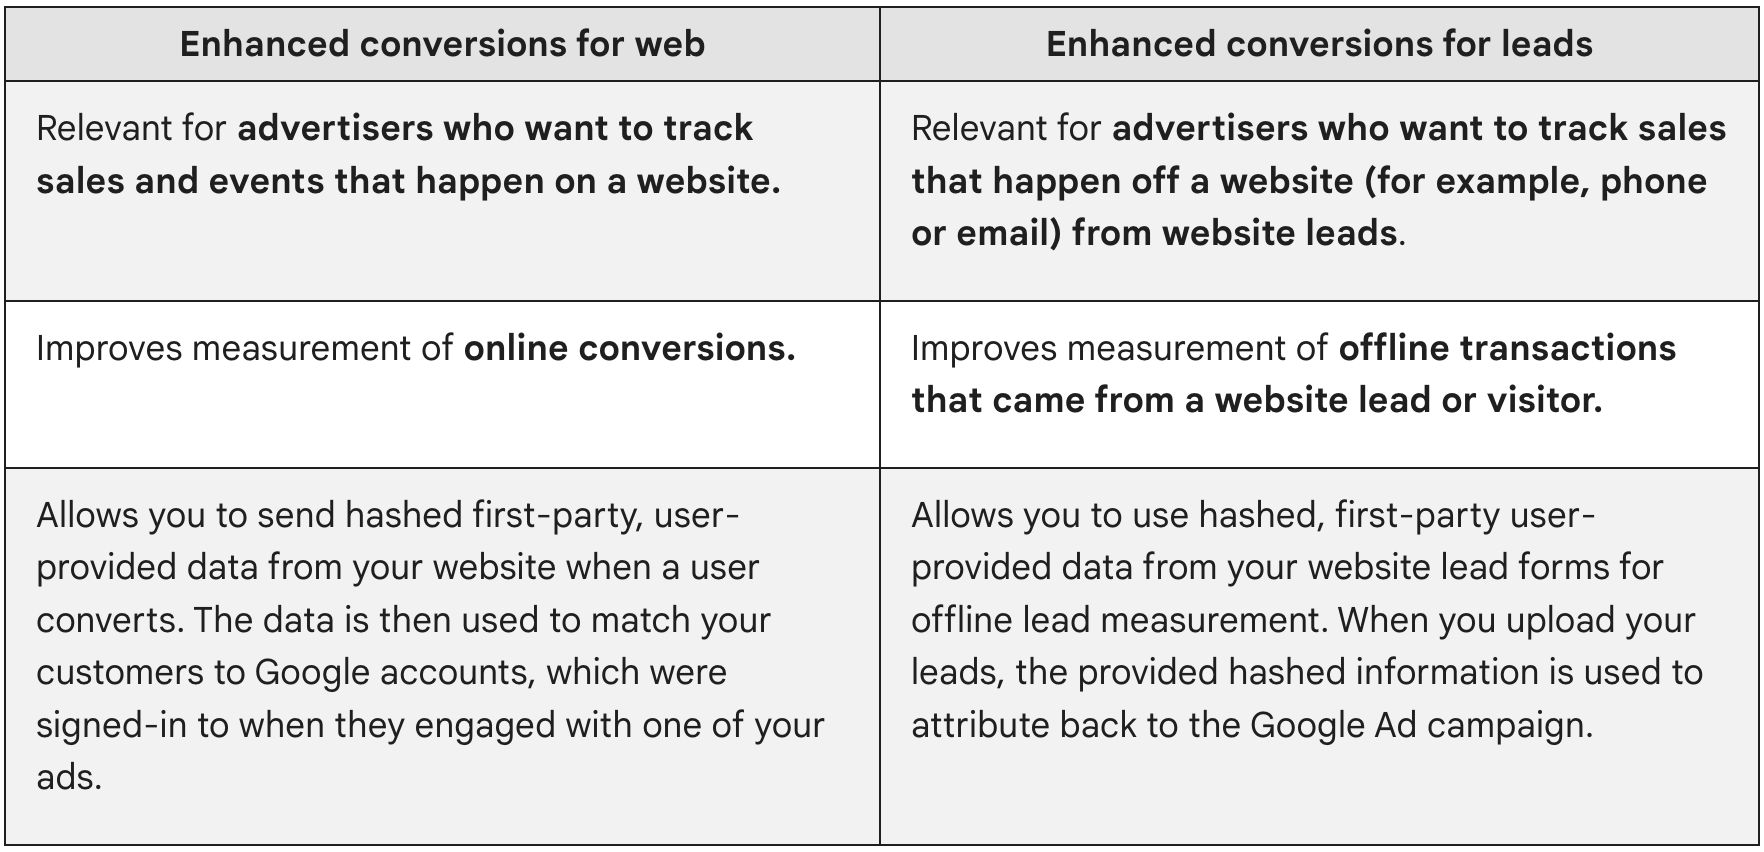 Conversion ที่ปรับปรุงแล้วสำหรับเว็บมีความเกี่ยวข้องกับผู้ลงโฆษณาที่ต้องการติดตามยอดขายและเหตุการณ์ที่เกิดขึ้นในเว็บไซต์ Conversion ที่ปรับปรุงแล้วสำหรับโอกาสในการขายเกี่ยวข้องกับผู้ลงโฆษณาที่ต้องการติดตามยอดขายที่เกิดขึ้นนอกเว็บไซต์ (เช่น โทรศัพท์หรืออีเมล) จากโอกาสในการขายของเว็บไซต์